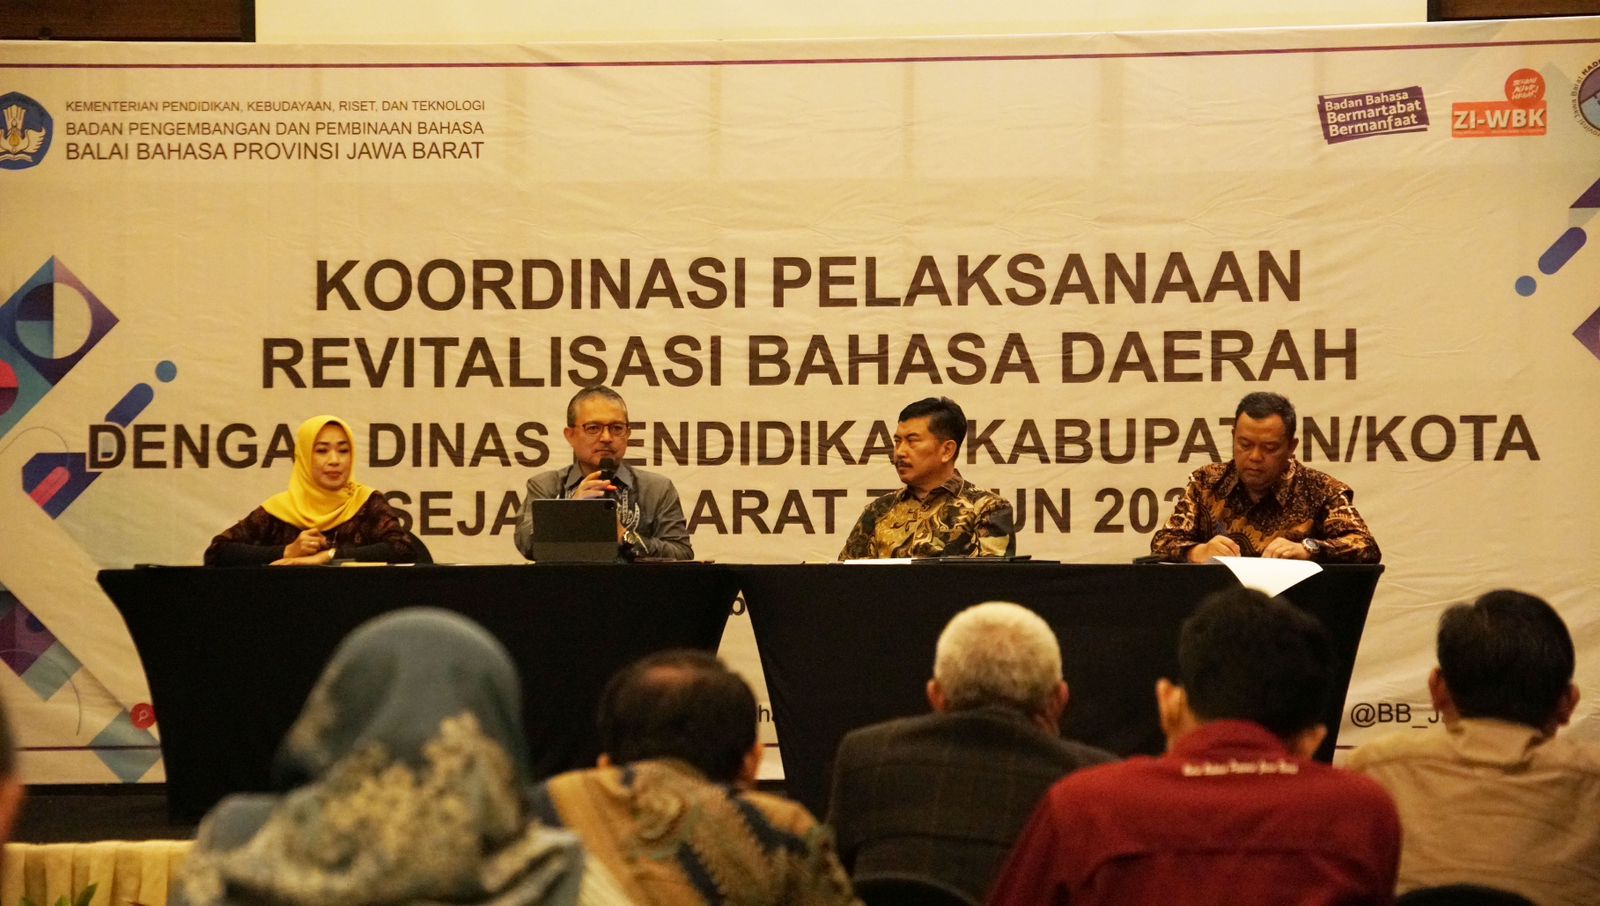 Balai Bahasa Prov. Jawa Barat Gelar Rakor RBD dengan Dinas Pendidikan Kabupaten/Kota Se-Jawa Barat